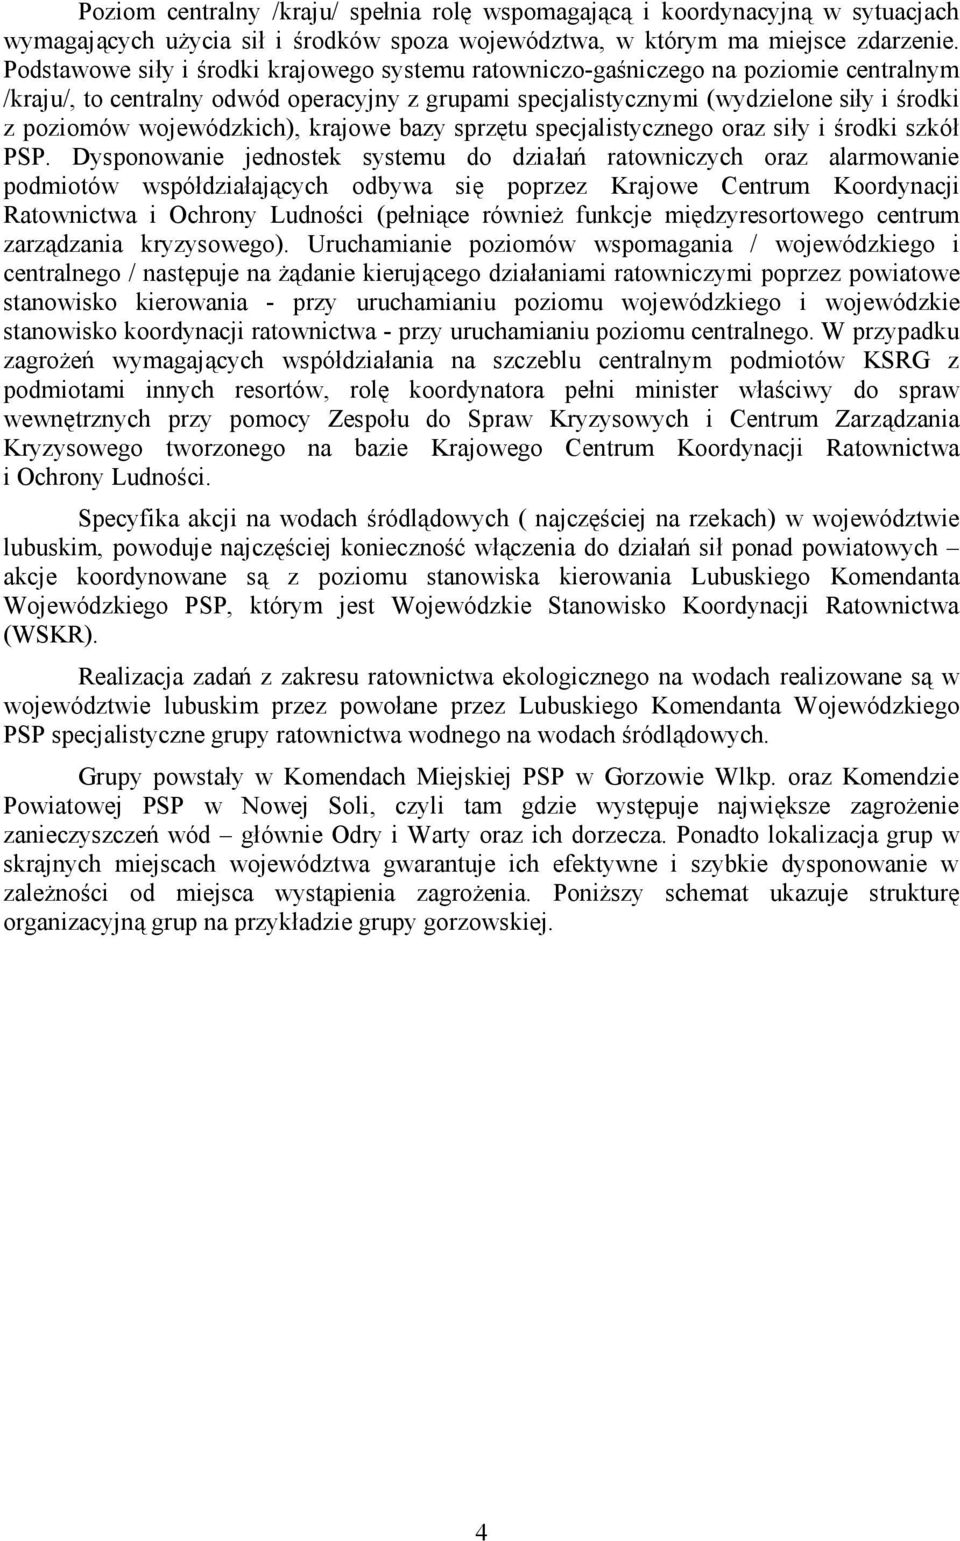 wojewódzkich), krajowe bazy sprzętu specjalistycznego oraz siły i środki szkół PSP.